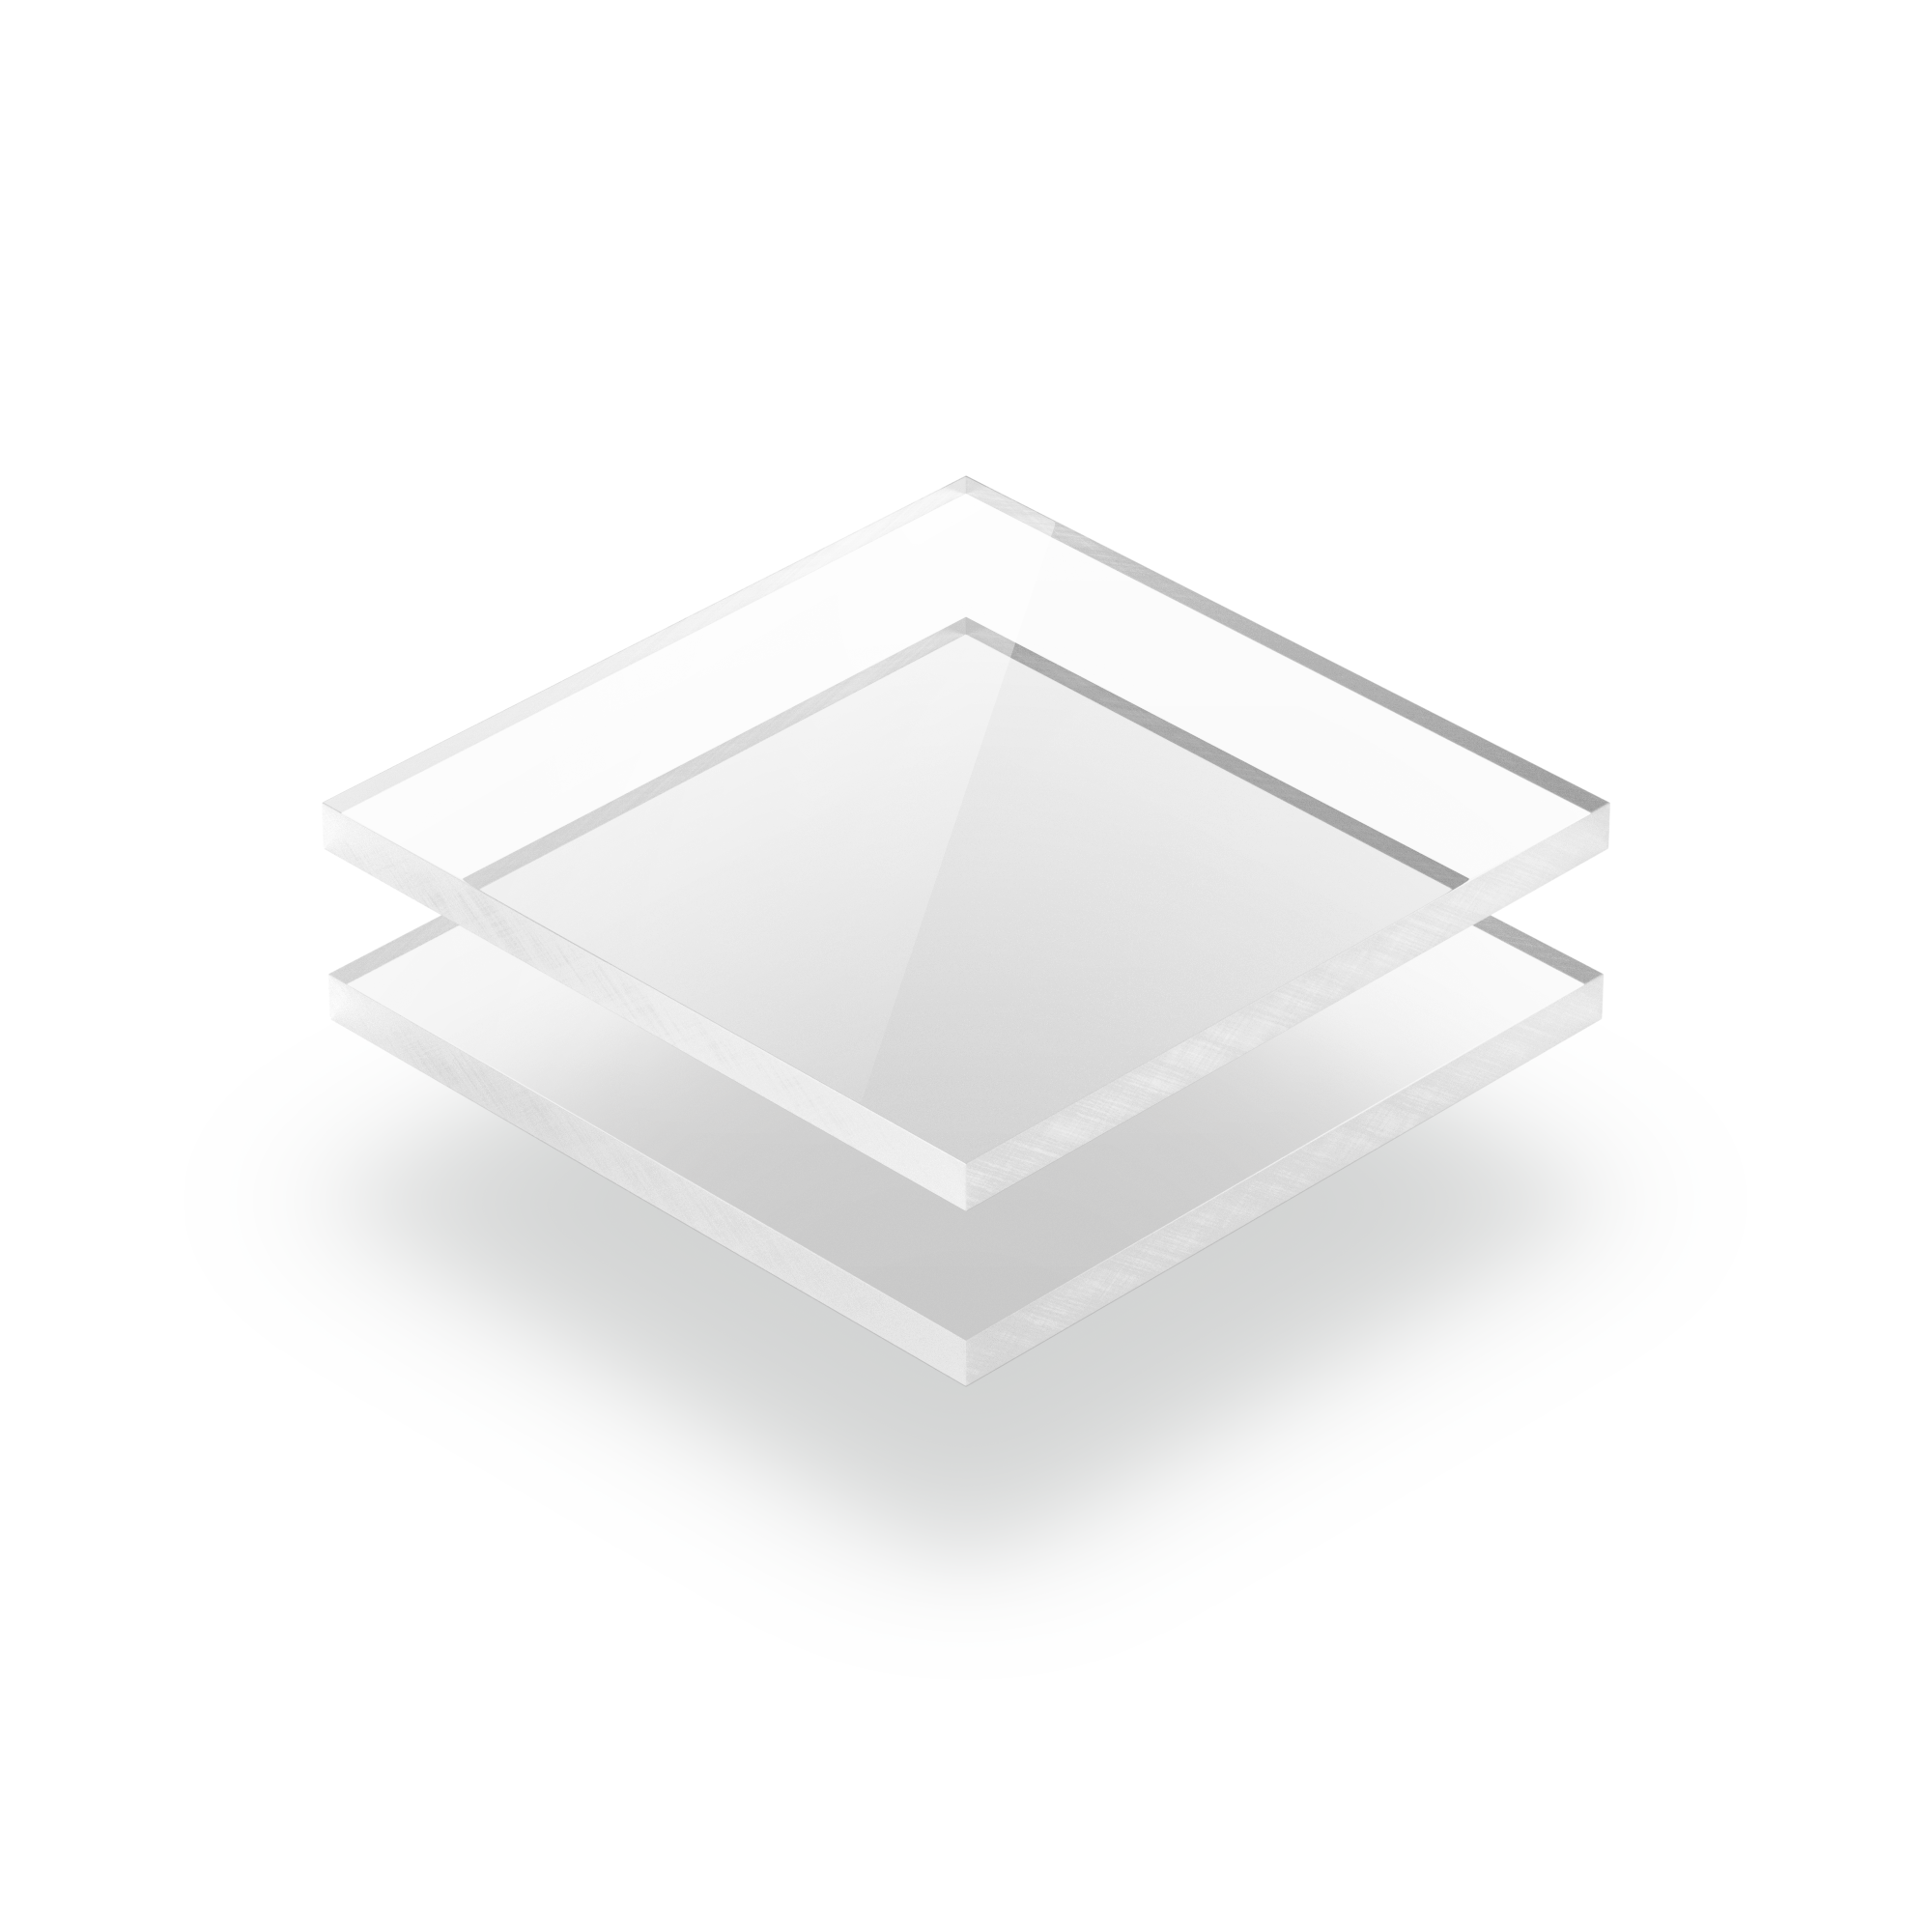 Clair acrylique plexiglas 0,0903/32 CERCLE la feuille en plastique